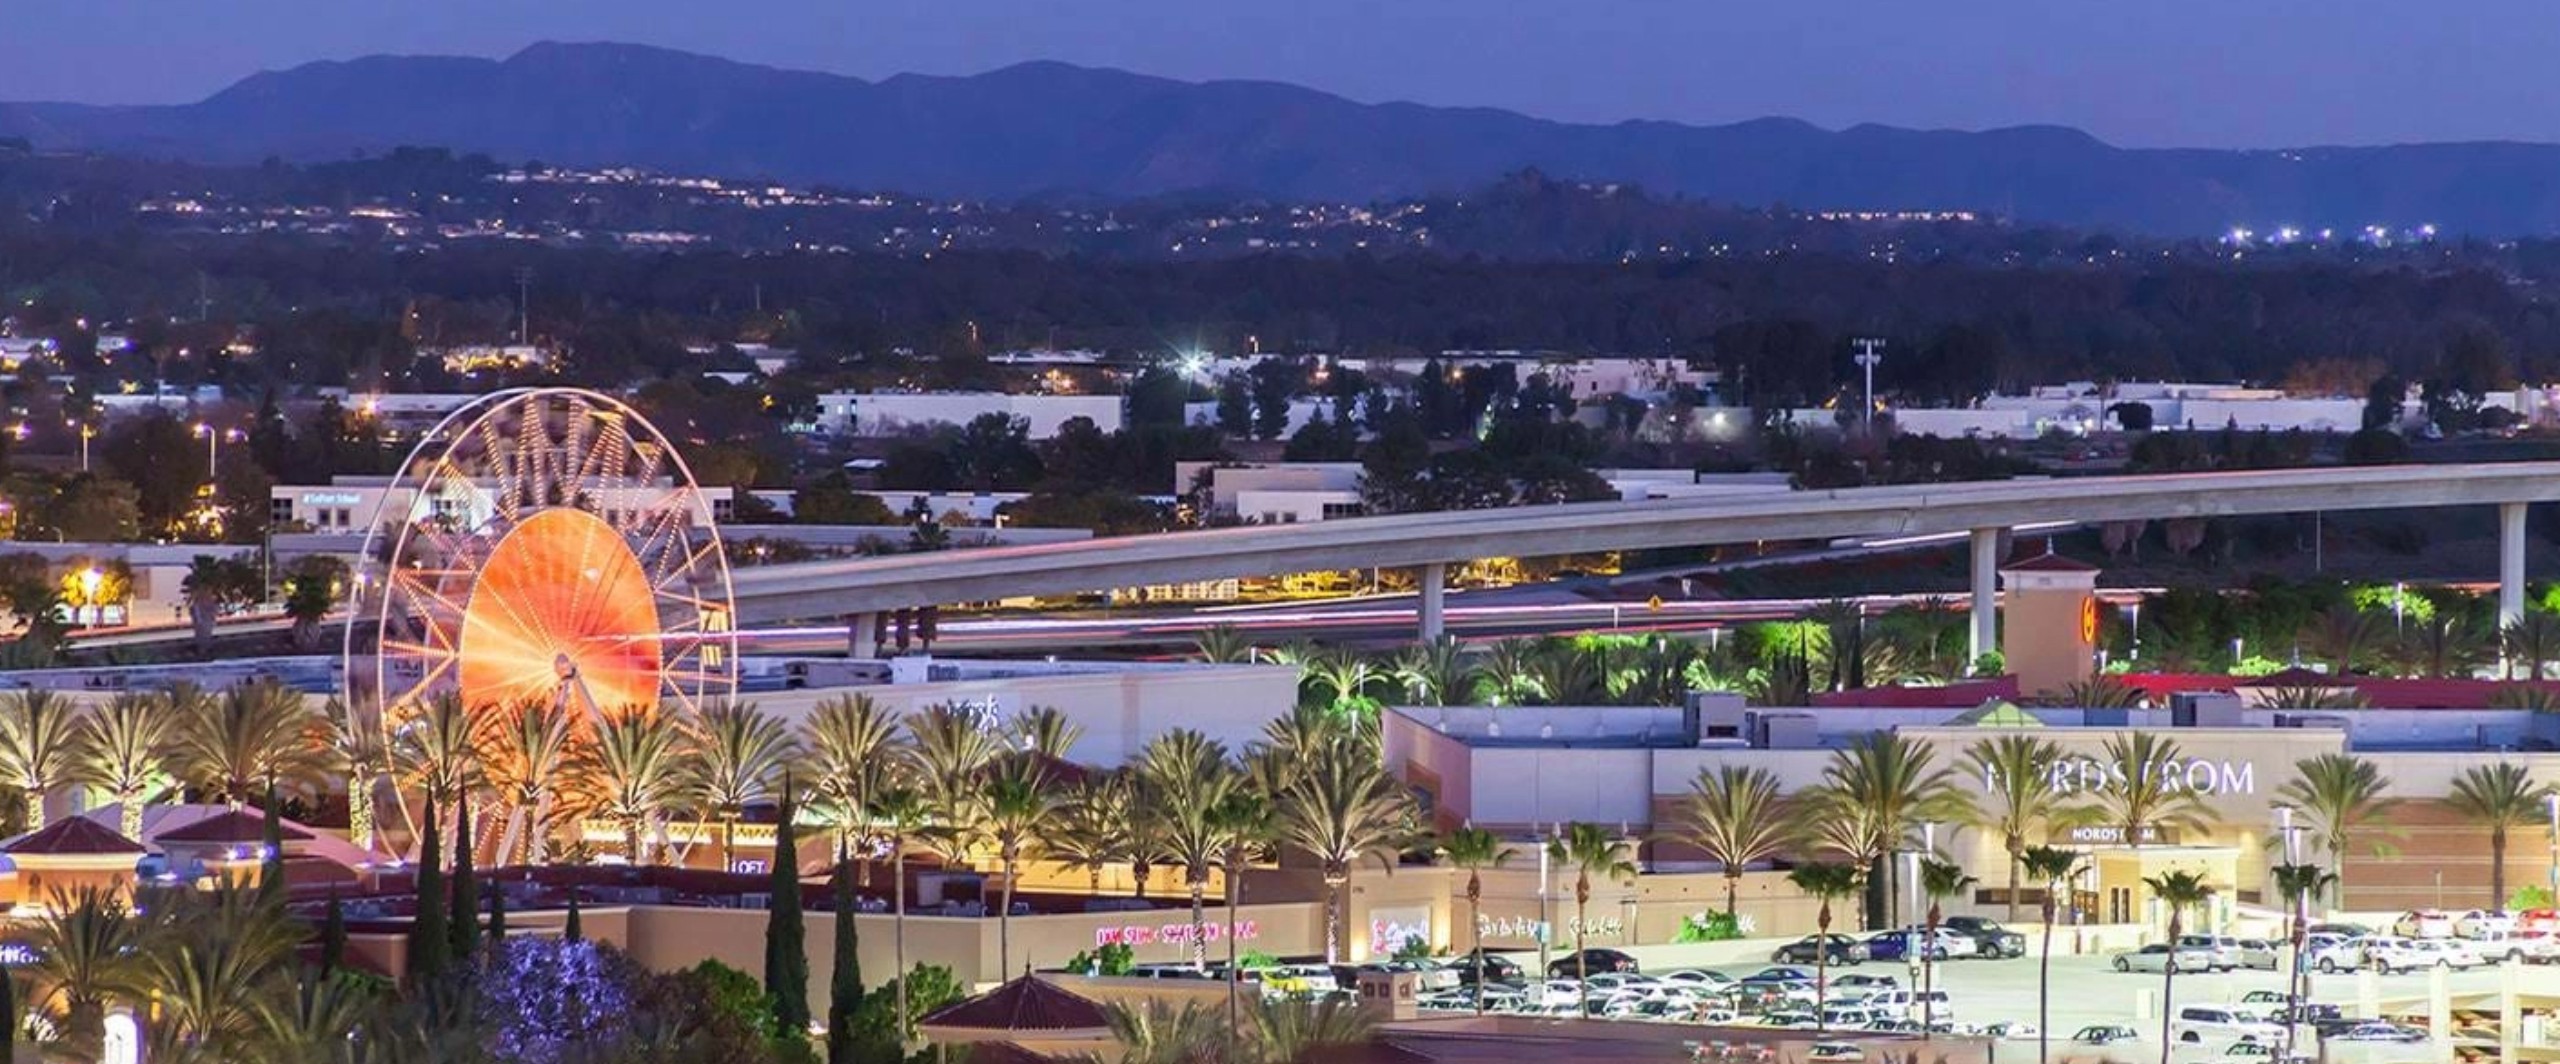 Aerial view of Irvine Spectrum Center